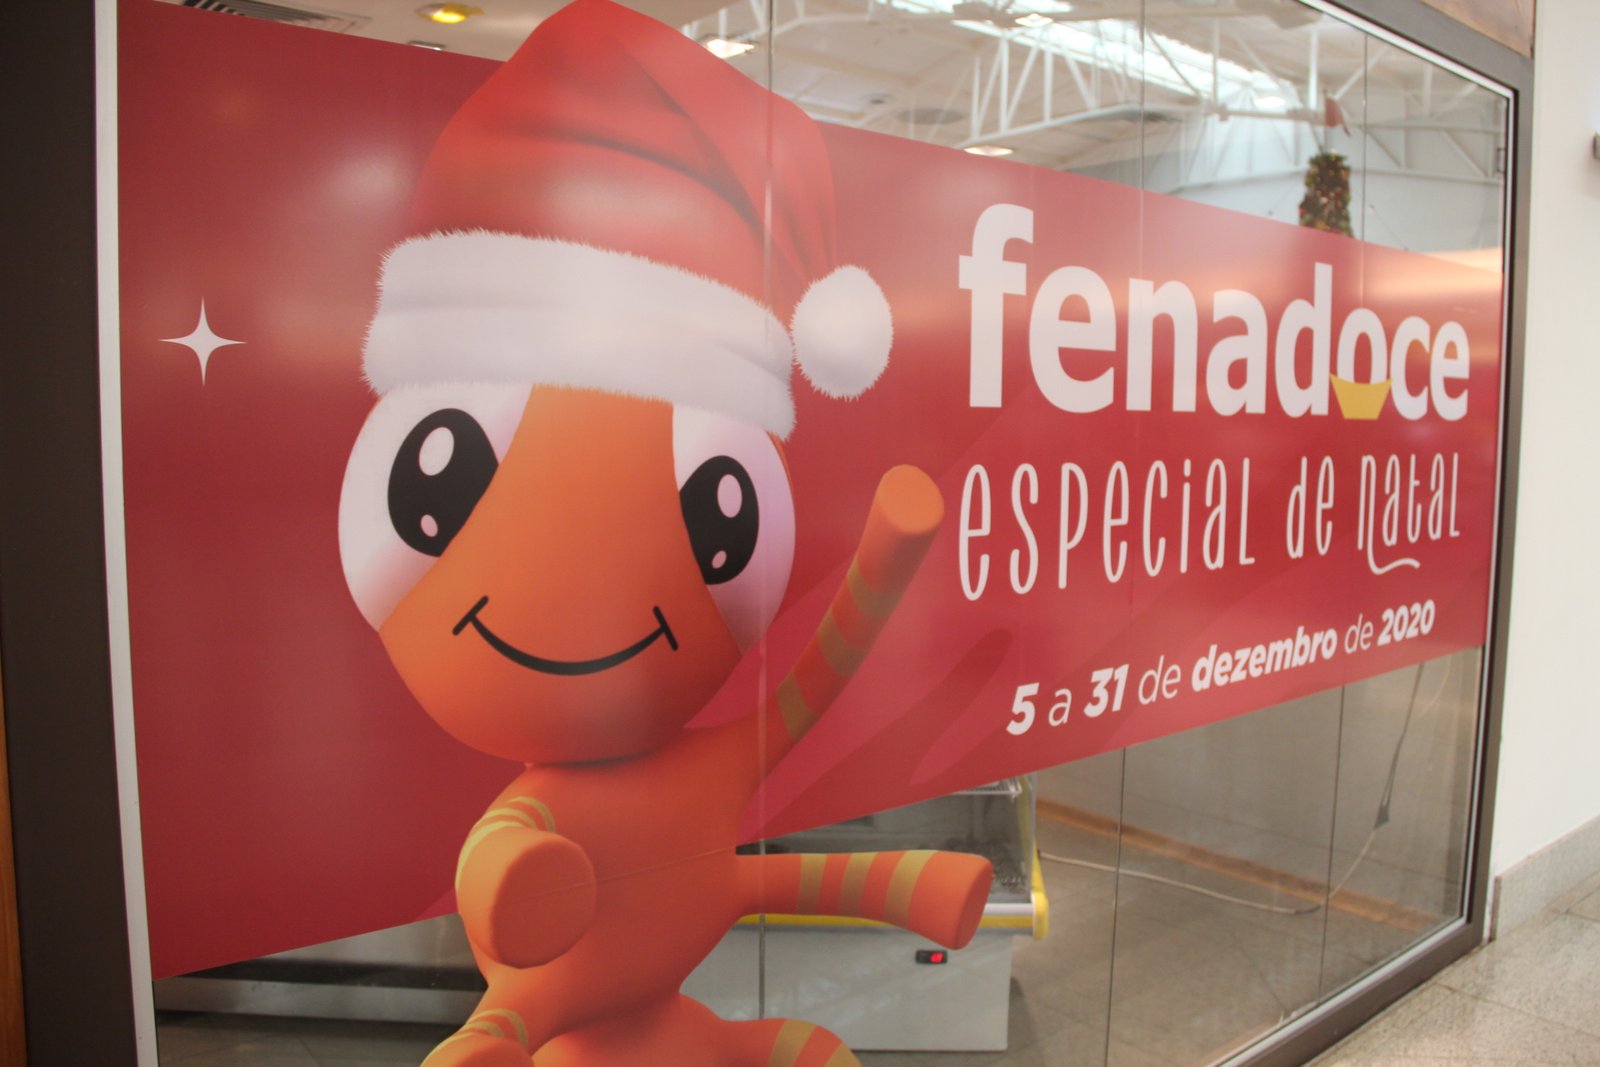 Fenadoce – Especial de Natal segue com a venda pelo aplicativo e as apresentações artísticas virtuais